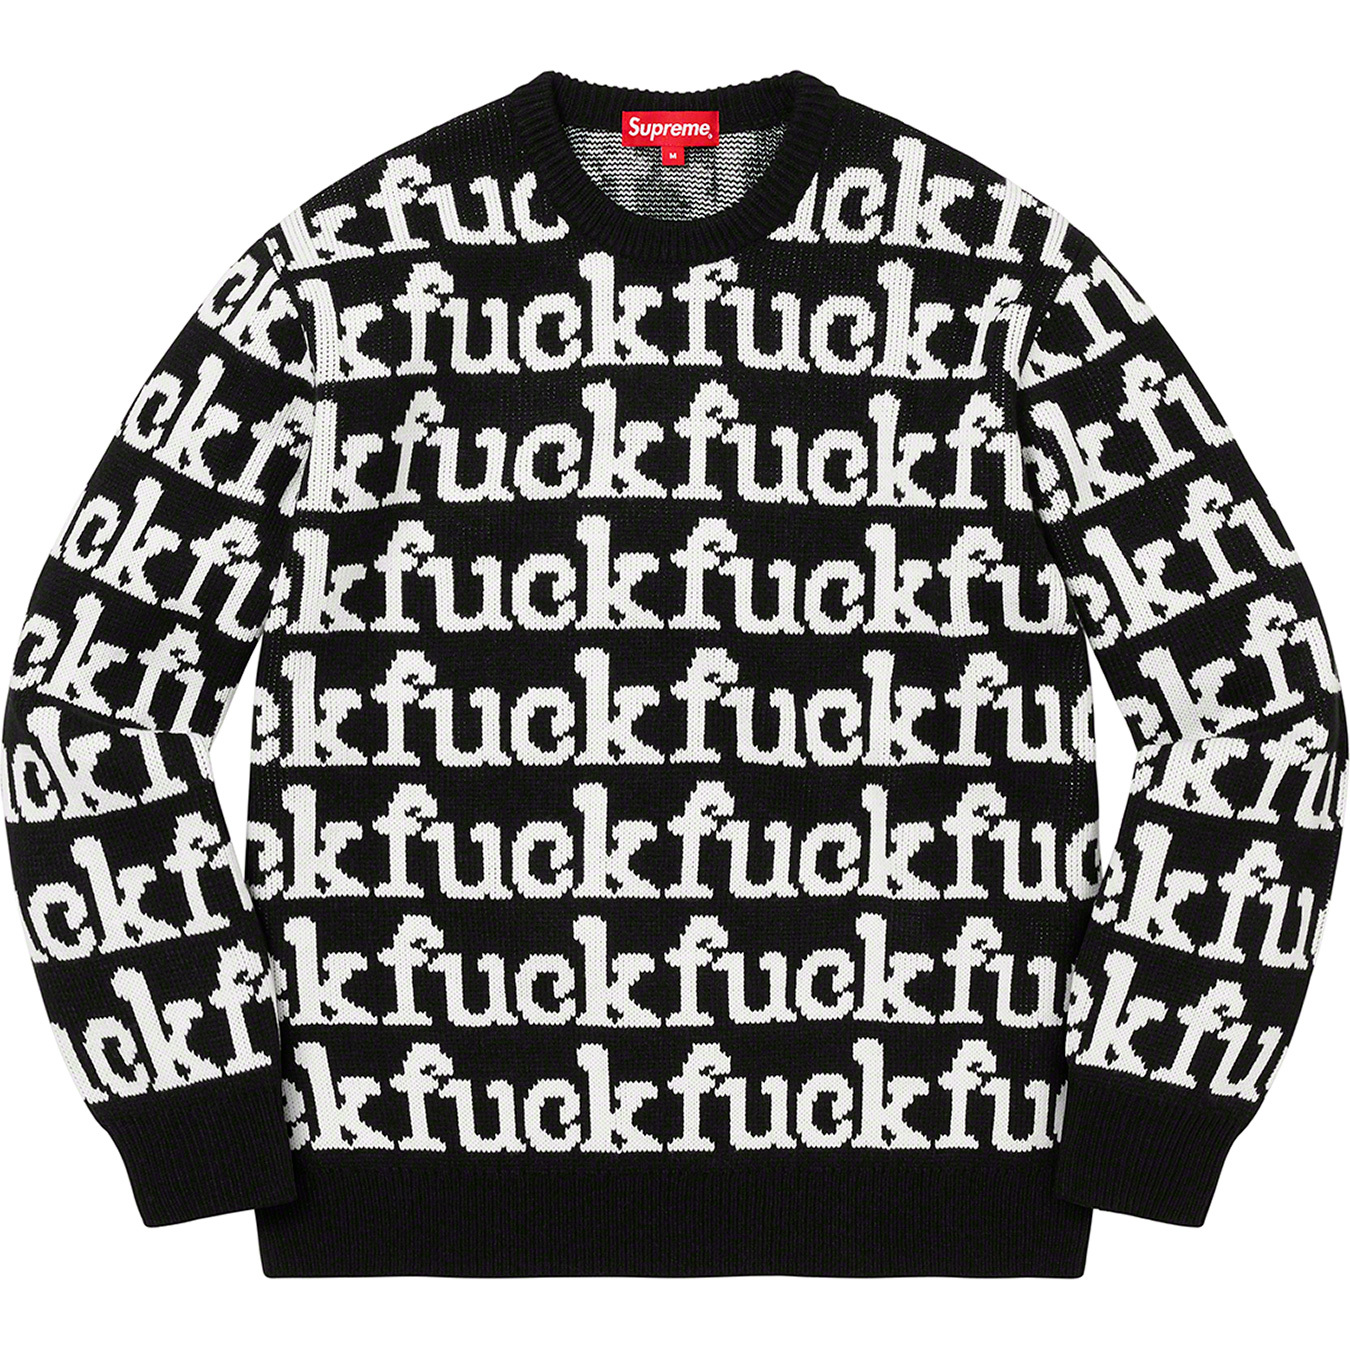 Supreme Fuck Sweater